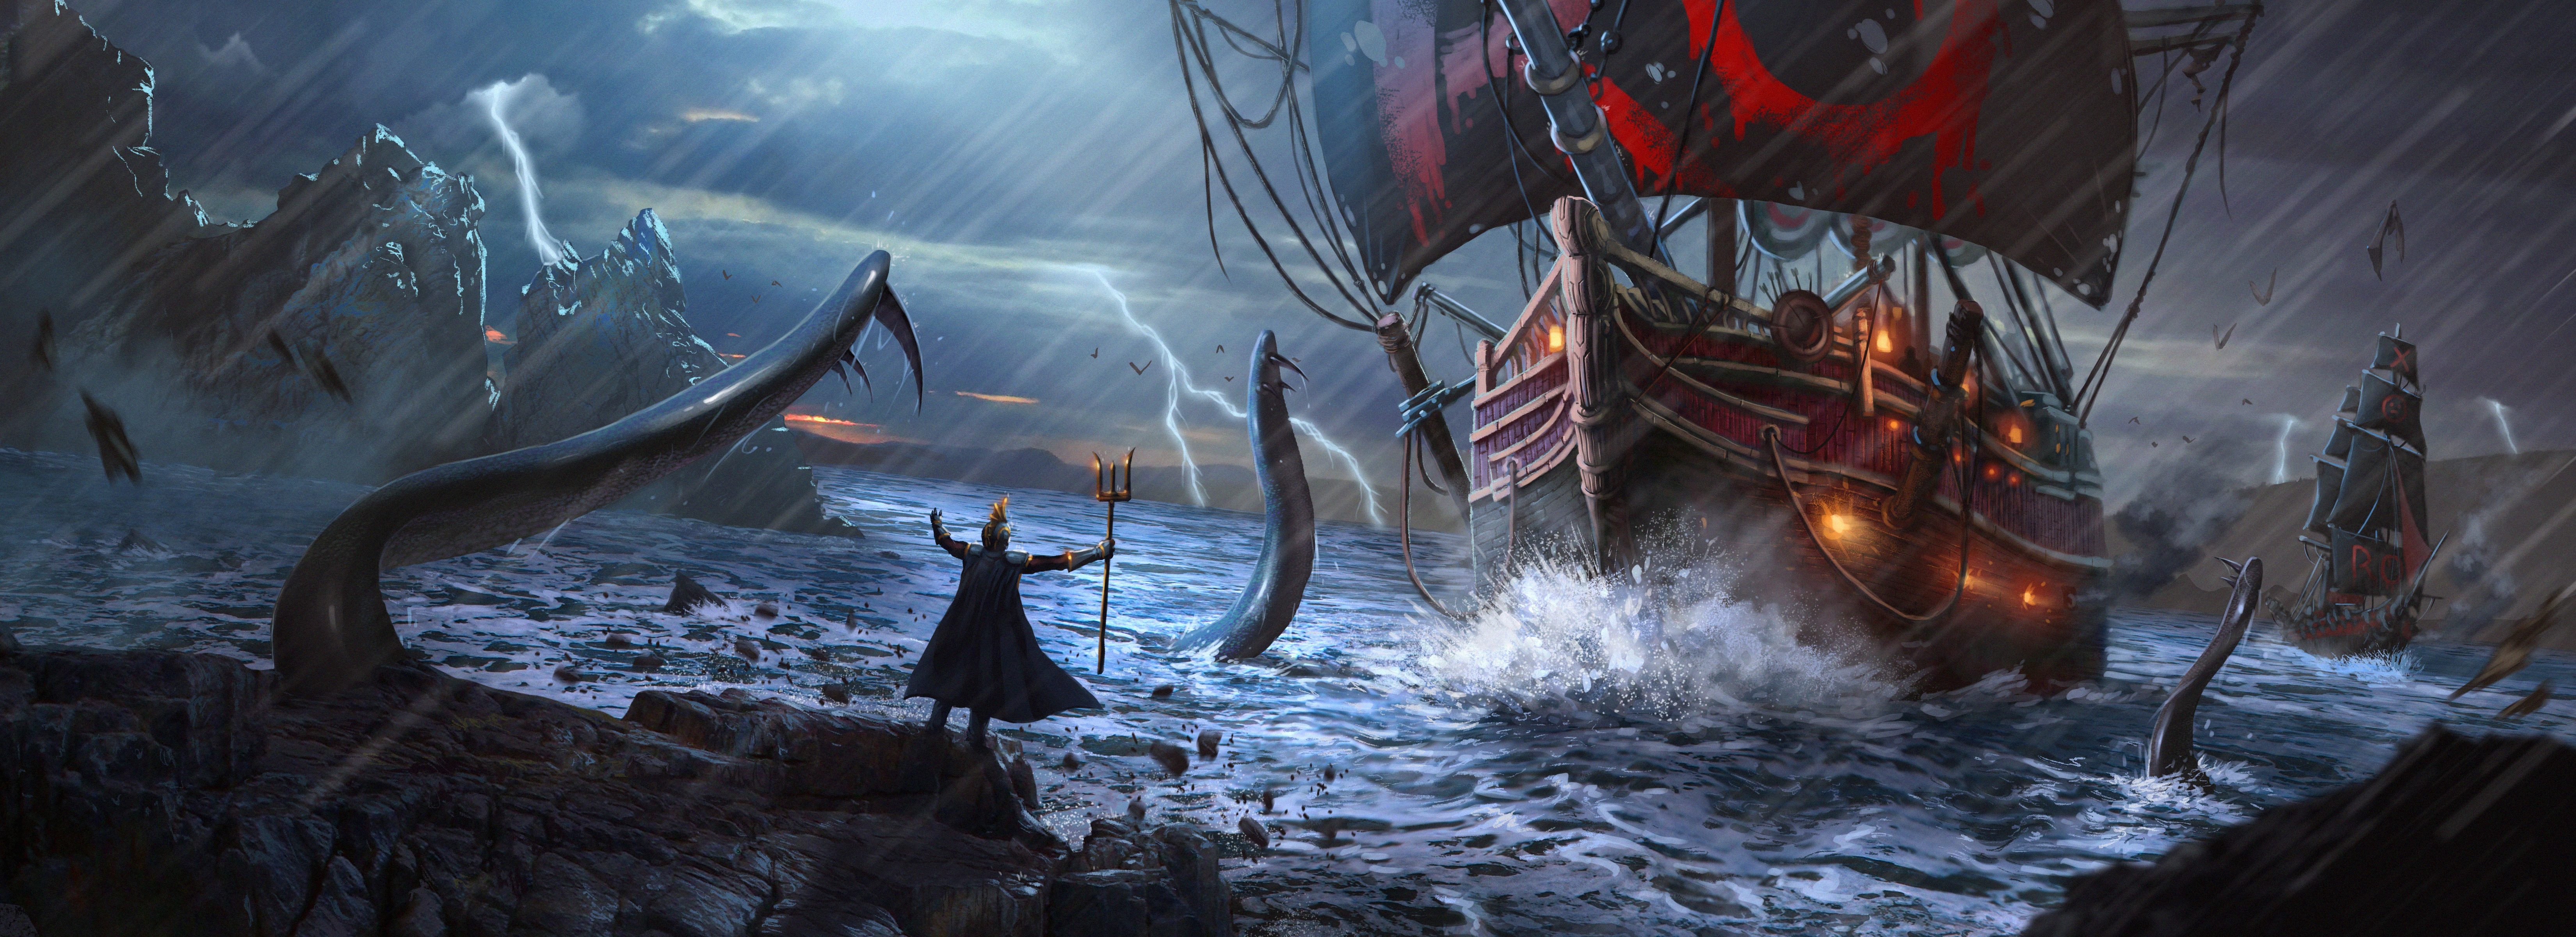 Download mobile wallpaper Fantasy, Rain, Lightning, Ship, Storm, Sea Monster for free.